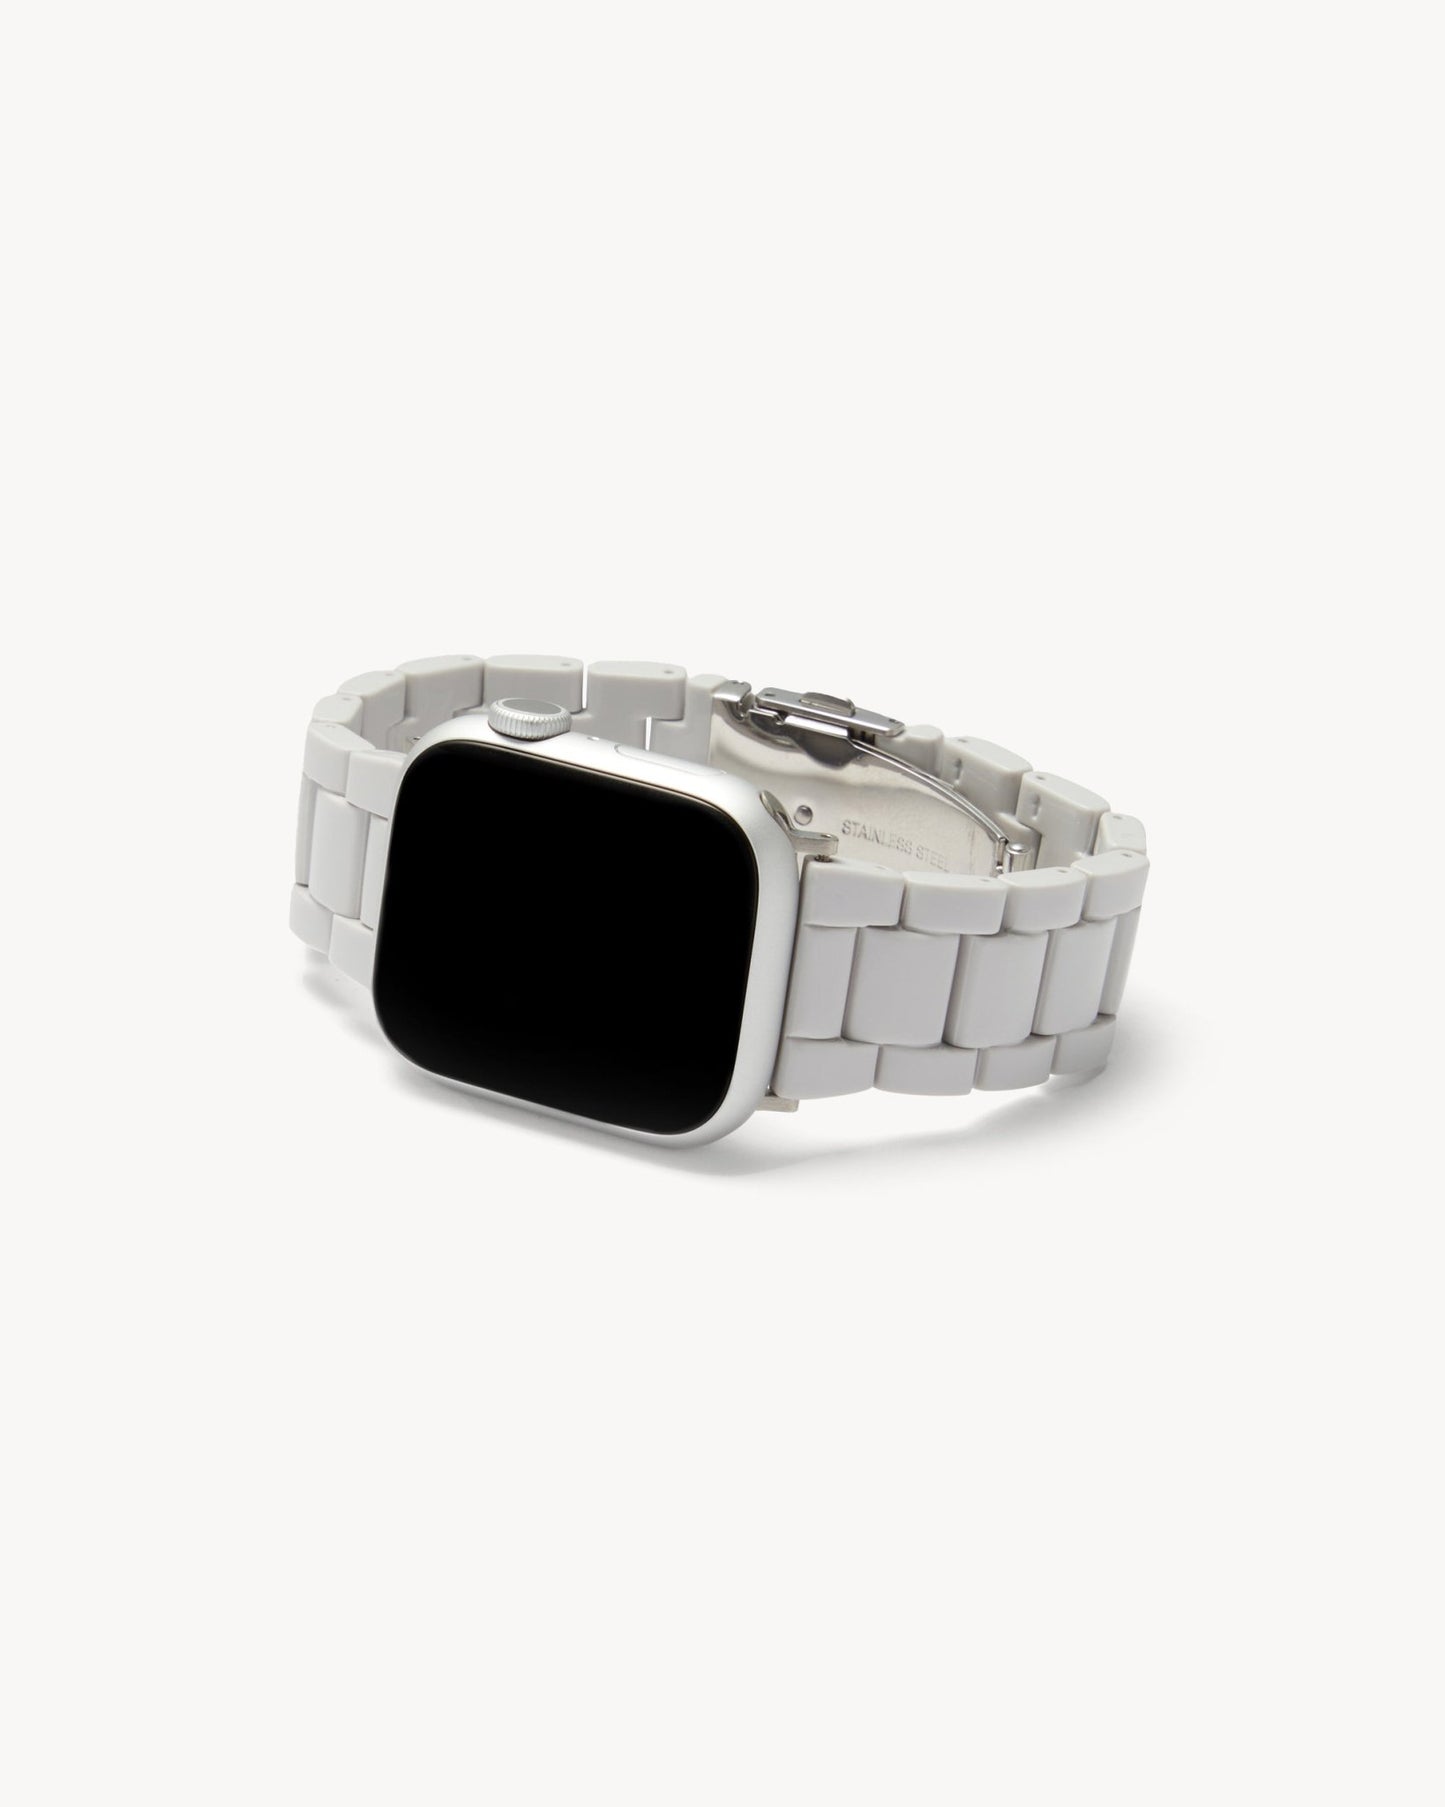 MACHETE Deluxe Apple Watch Band Set in Light Grey